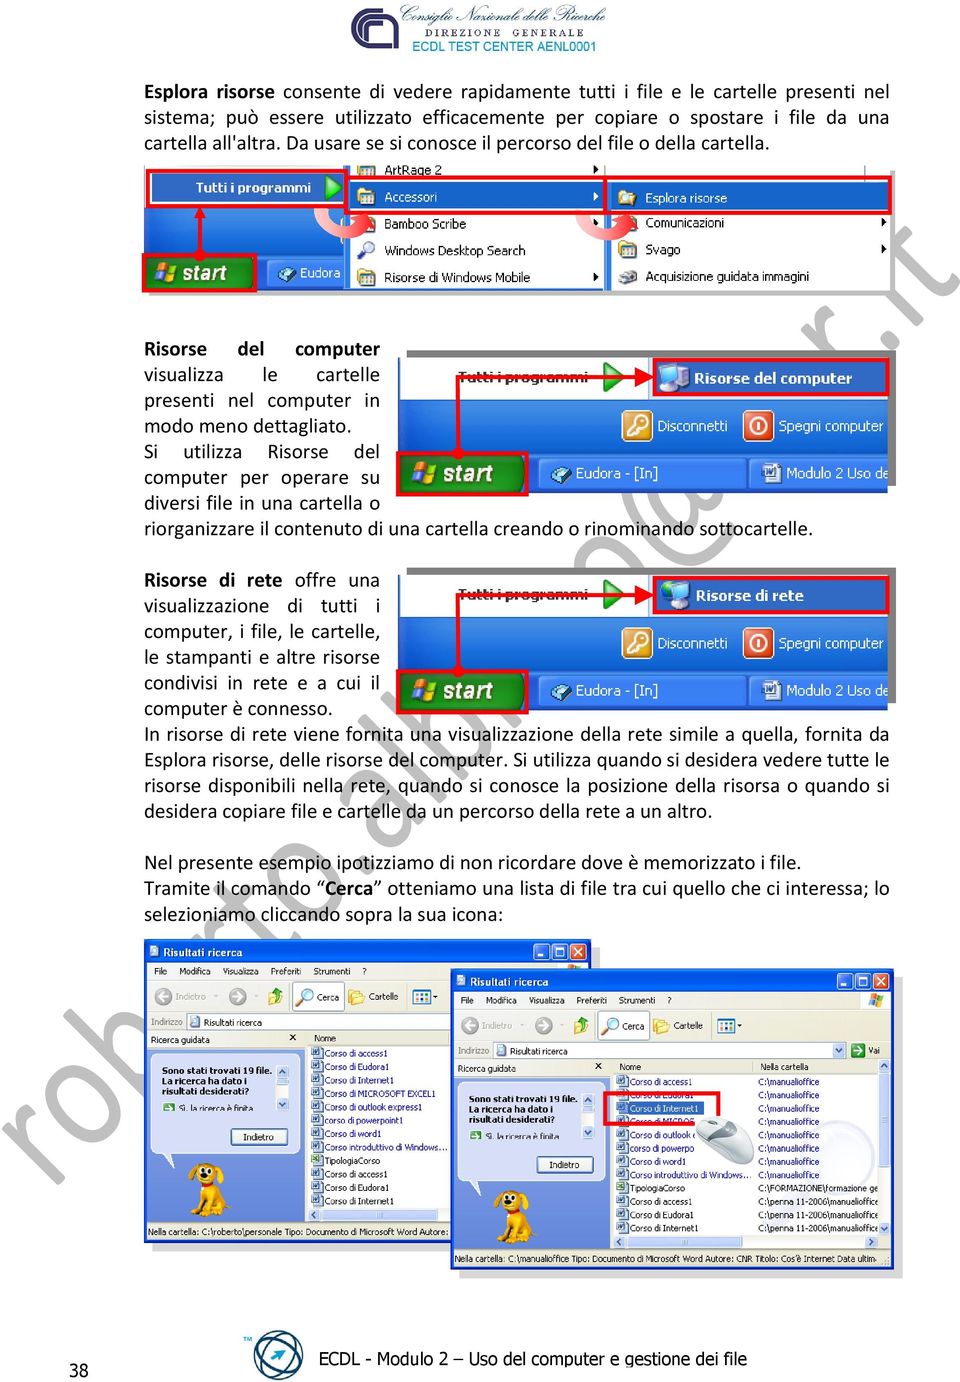 Si utilizza Risorse del computer per operare su diversi file in una cartella o riorganizzare il contenuto di una cartella creando o rinominando sottocartelle.